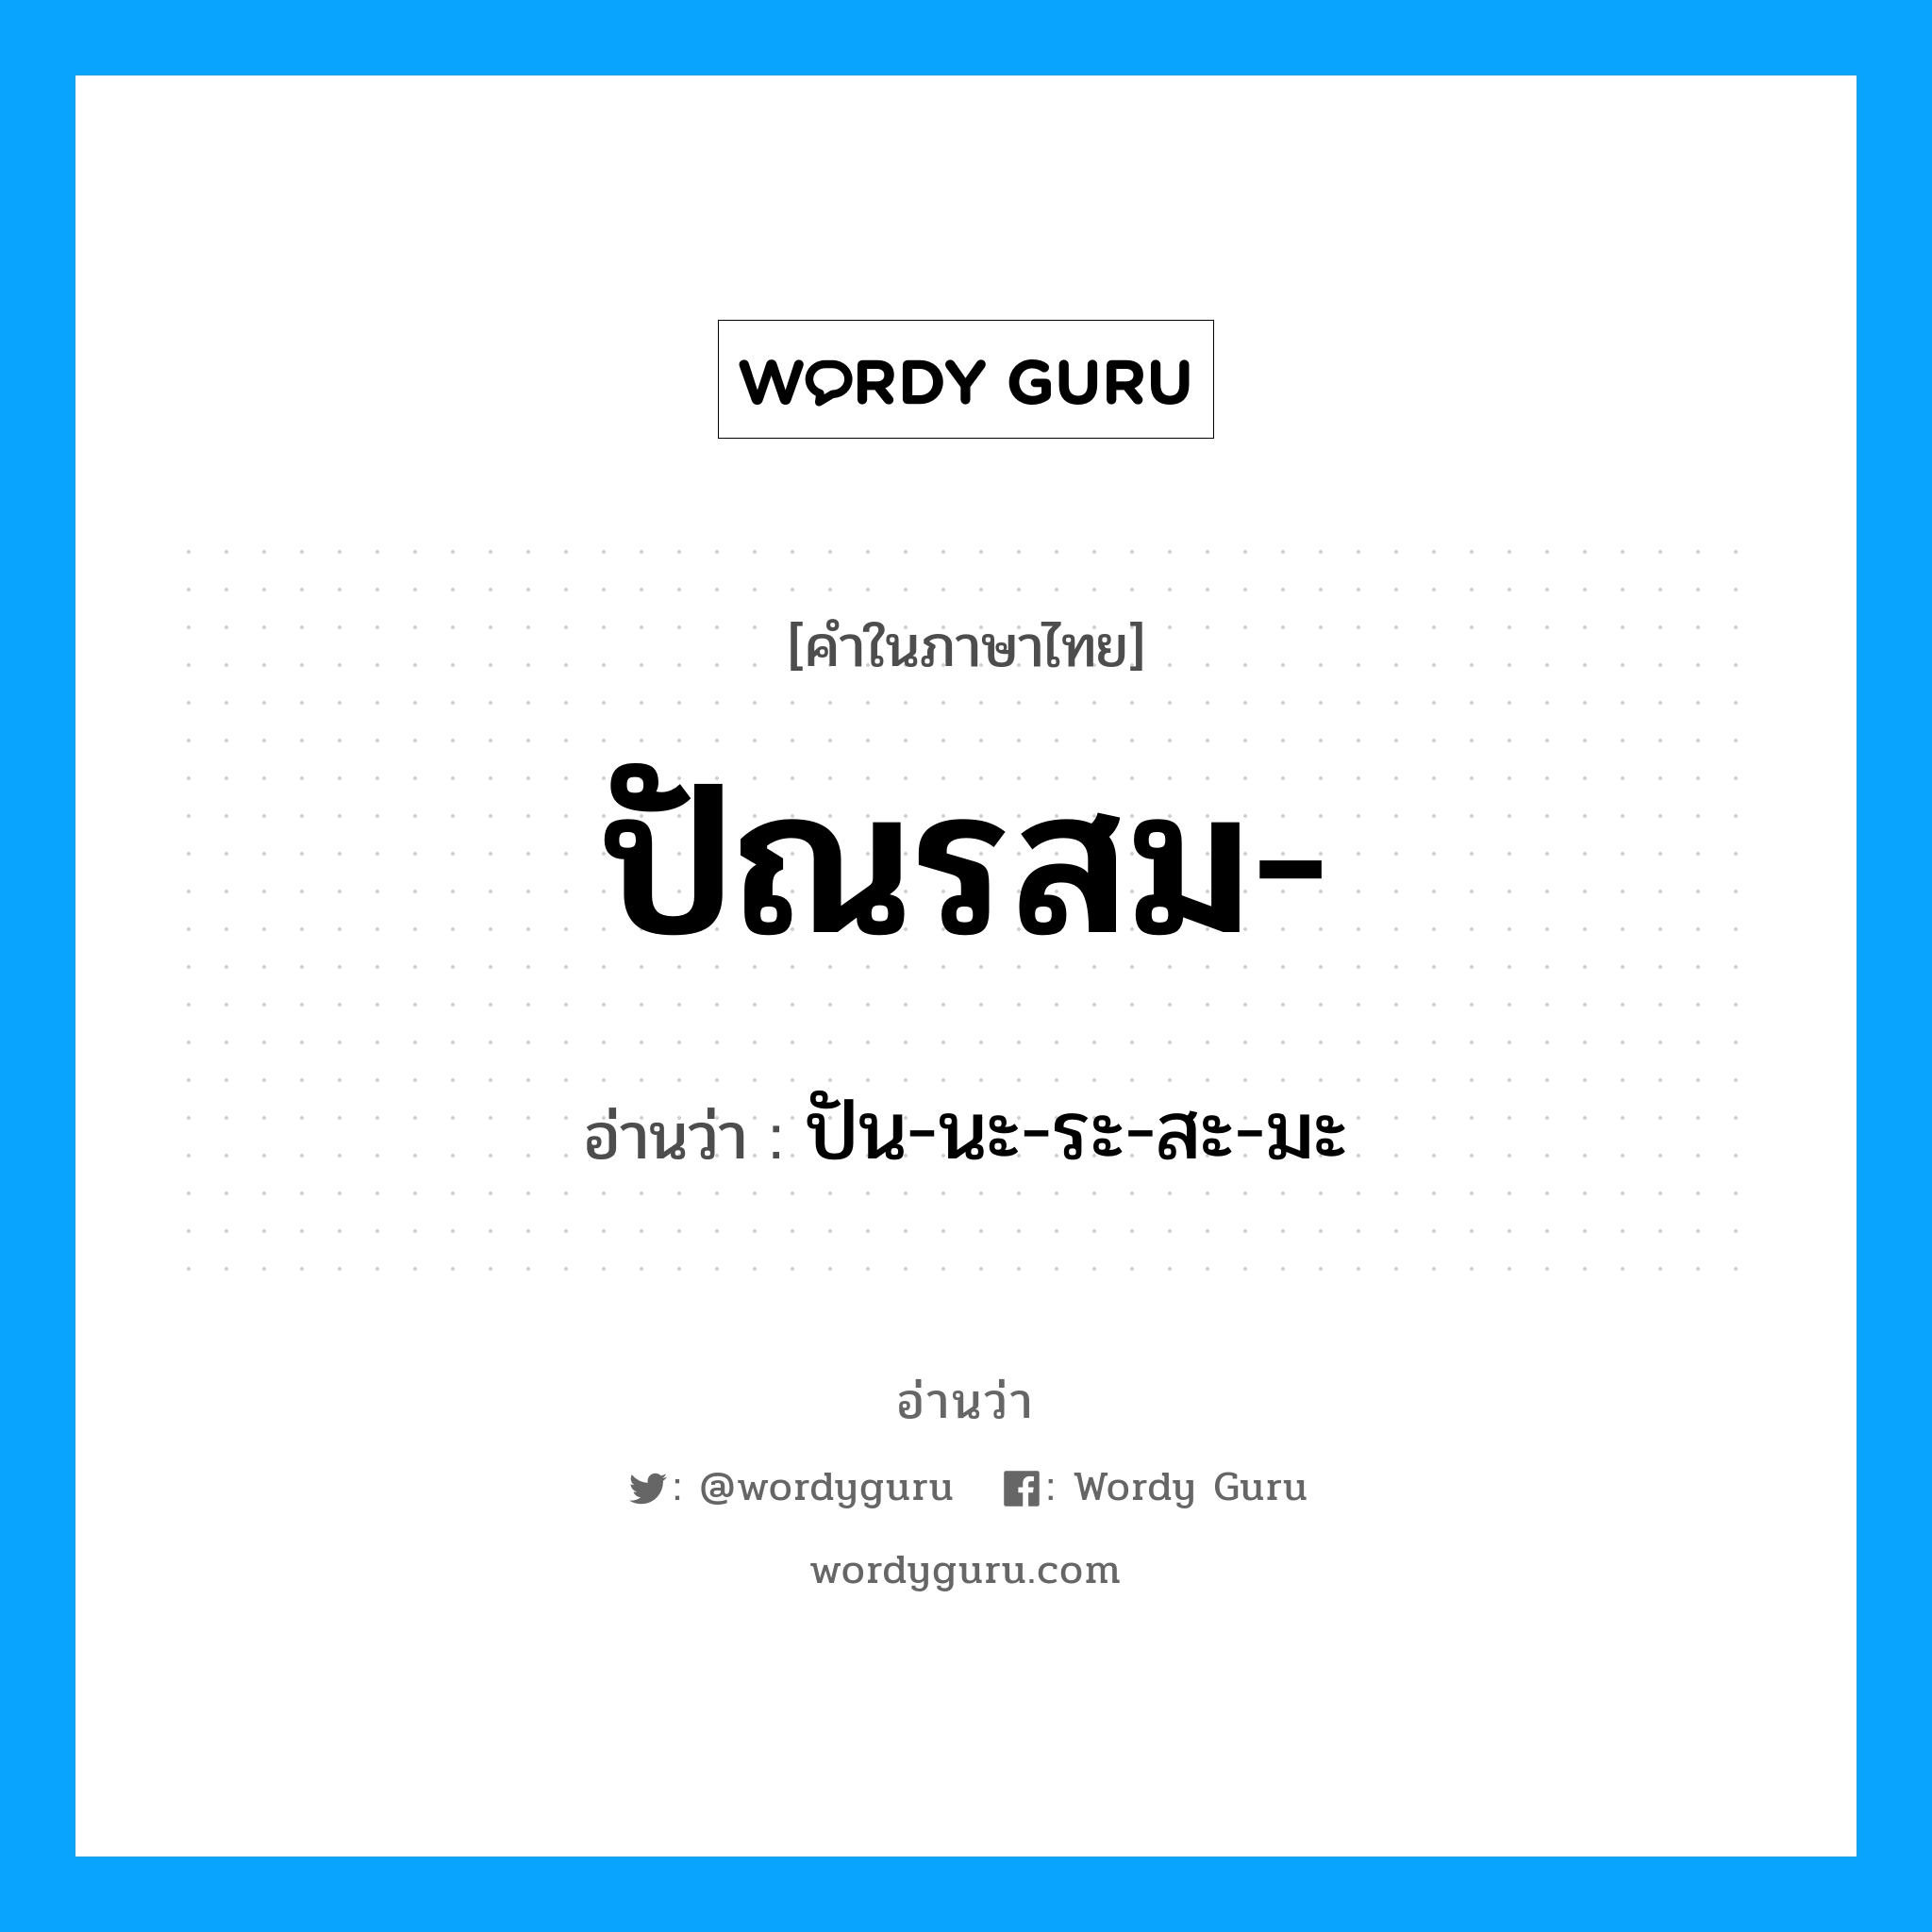 ปัน-นะ-ระ-สะ-มะ เป็นคำอ่านของคำไหน?, คำในภาษาไทย ปัน-นะ-ระ-สะ-มะ อ่านว่า ปัณรสม-